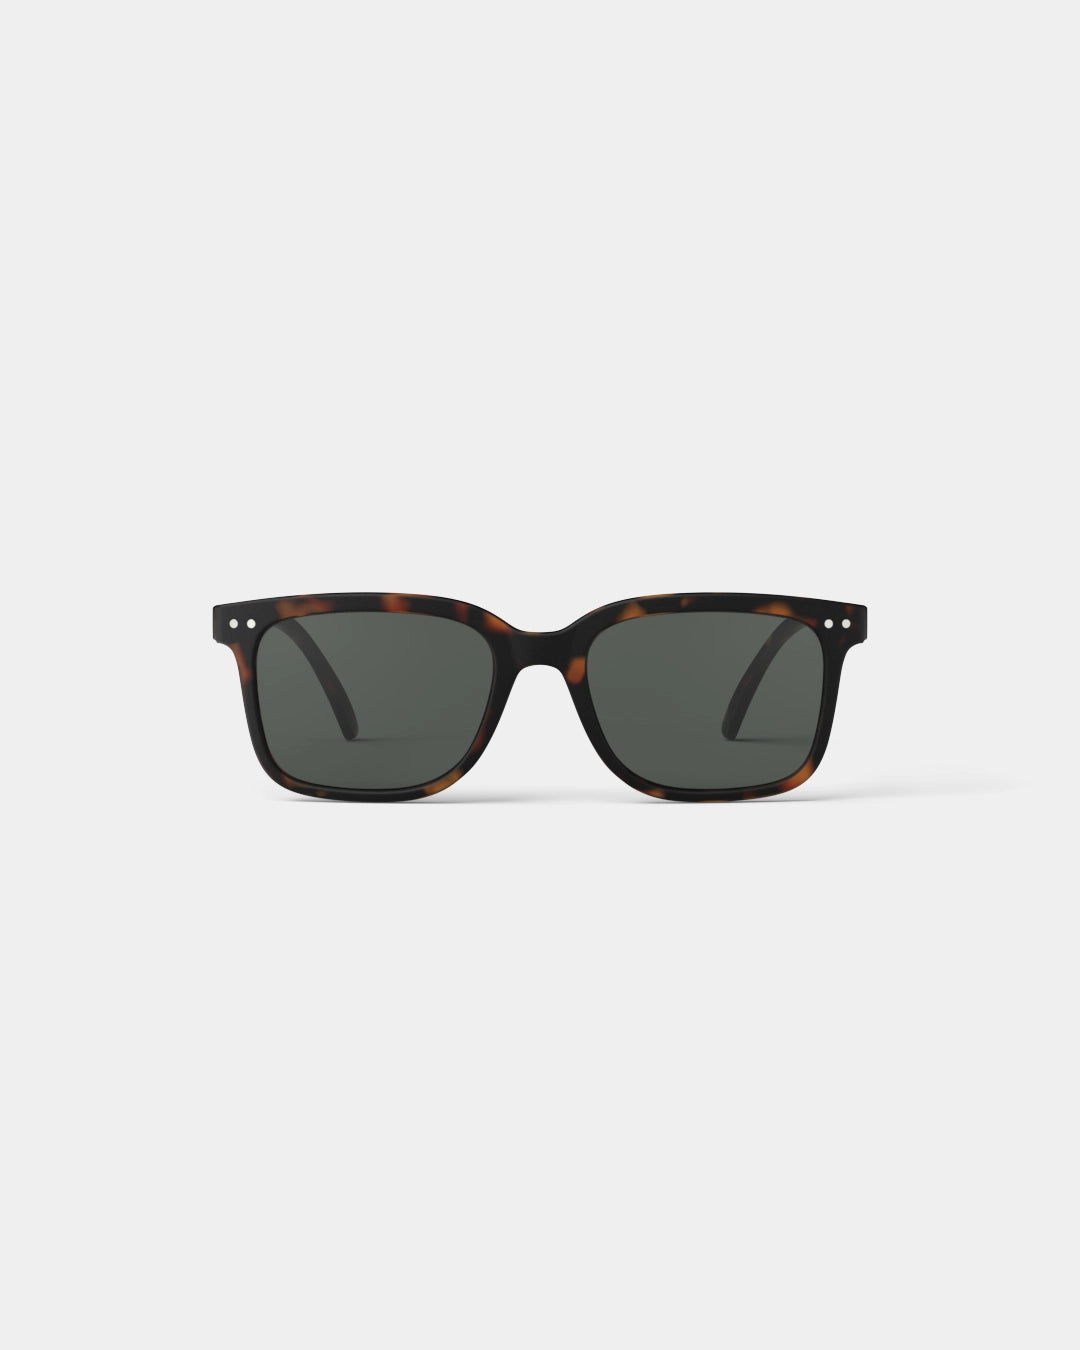 #L Sun Glasses - Tortoise grey lense